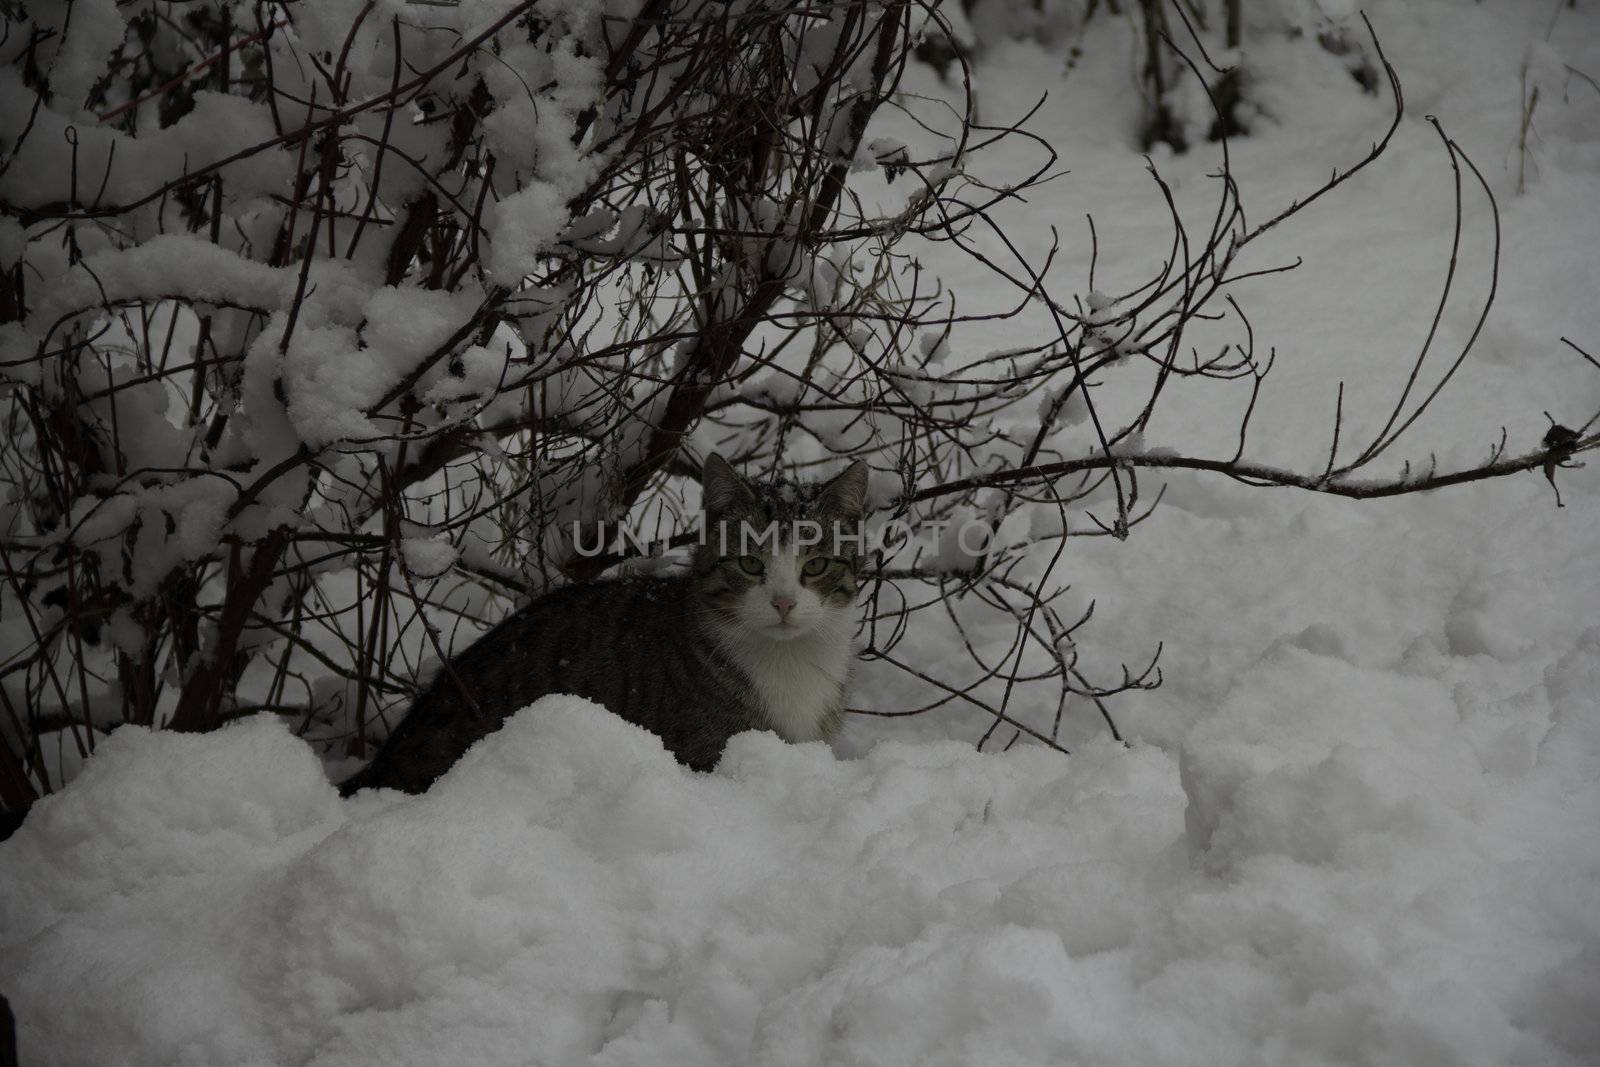 cat in the snow







cat in the snow







cat